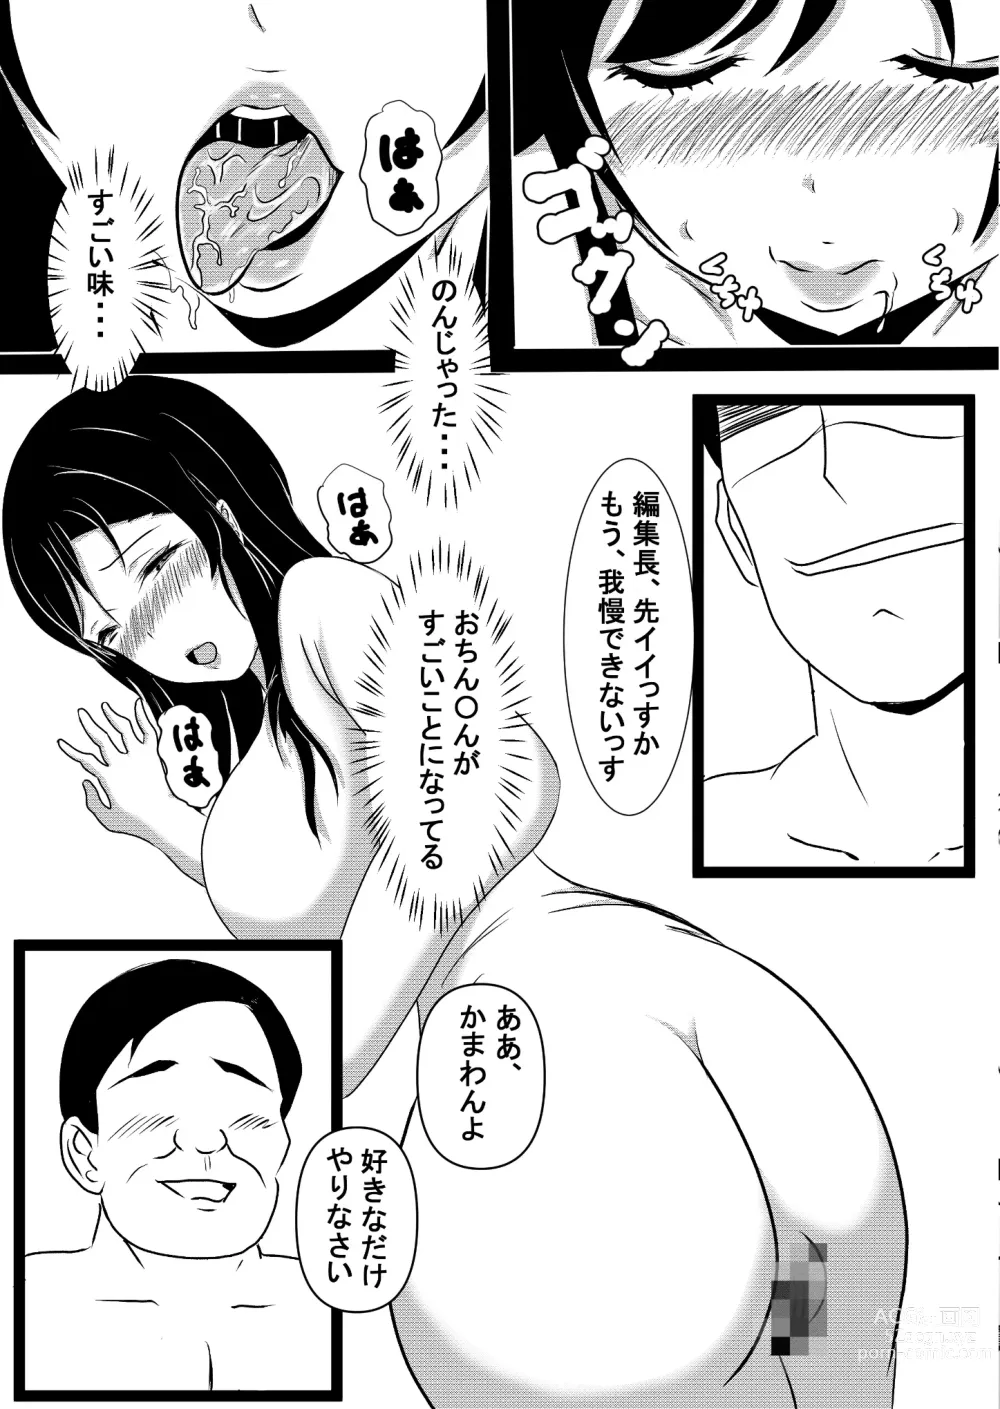 Page 26 of doujinshi Onna Ero Mangaka Tachibana Kyouko wa Yume o Miru